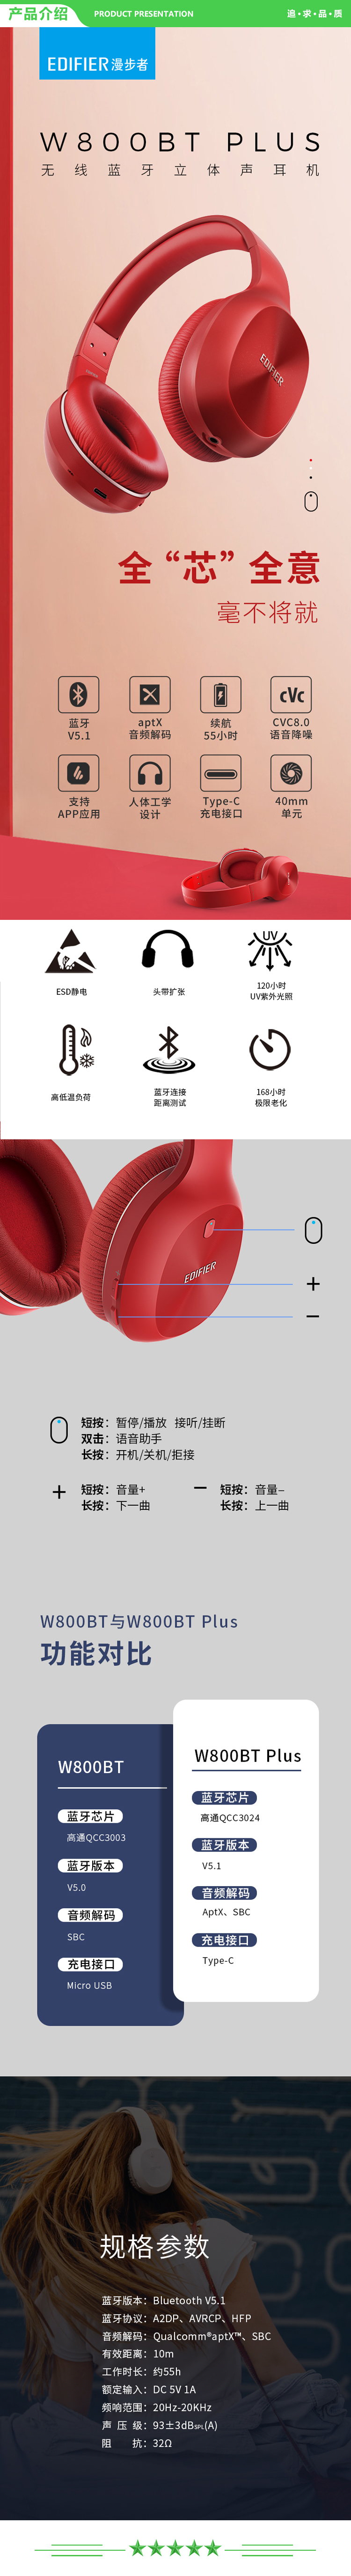 漫步者 EDIFIER W800BT Plus 头戴式立体声蓝牙耳机 音乐耳机 手机耳机 通用苹果华为小米 烈焰红 .jpg